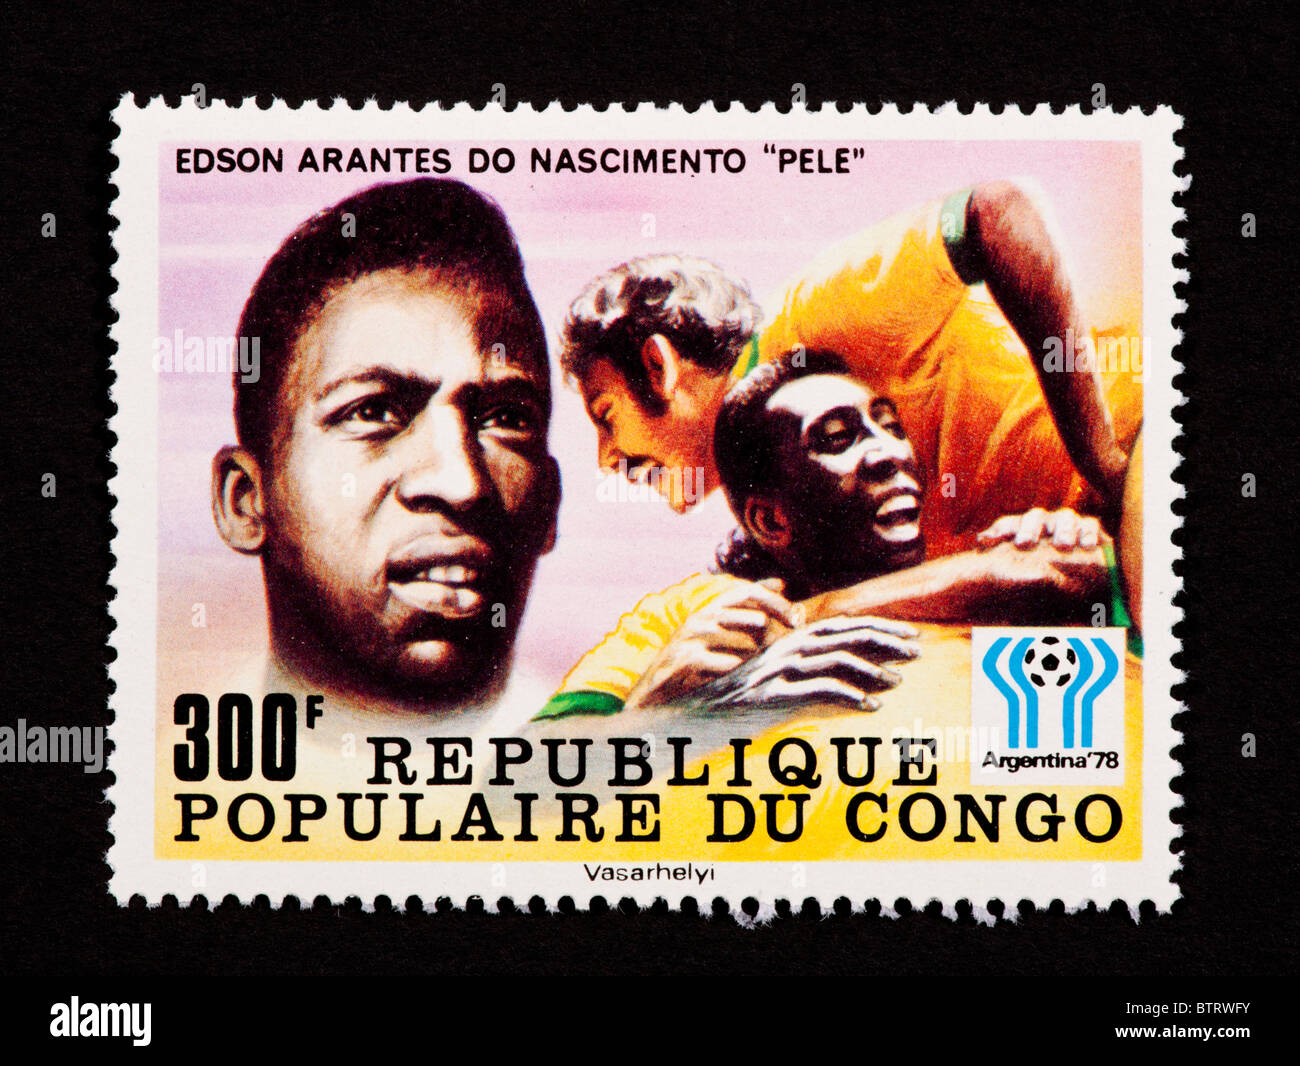 Timbre-poste de représentant du Congo (Pelé Edson Arantes do Nascimento). Banque D'Images